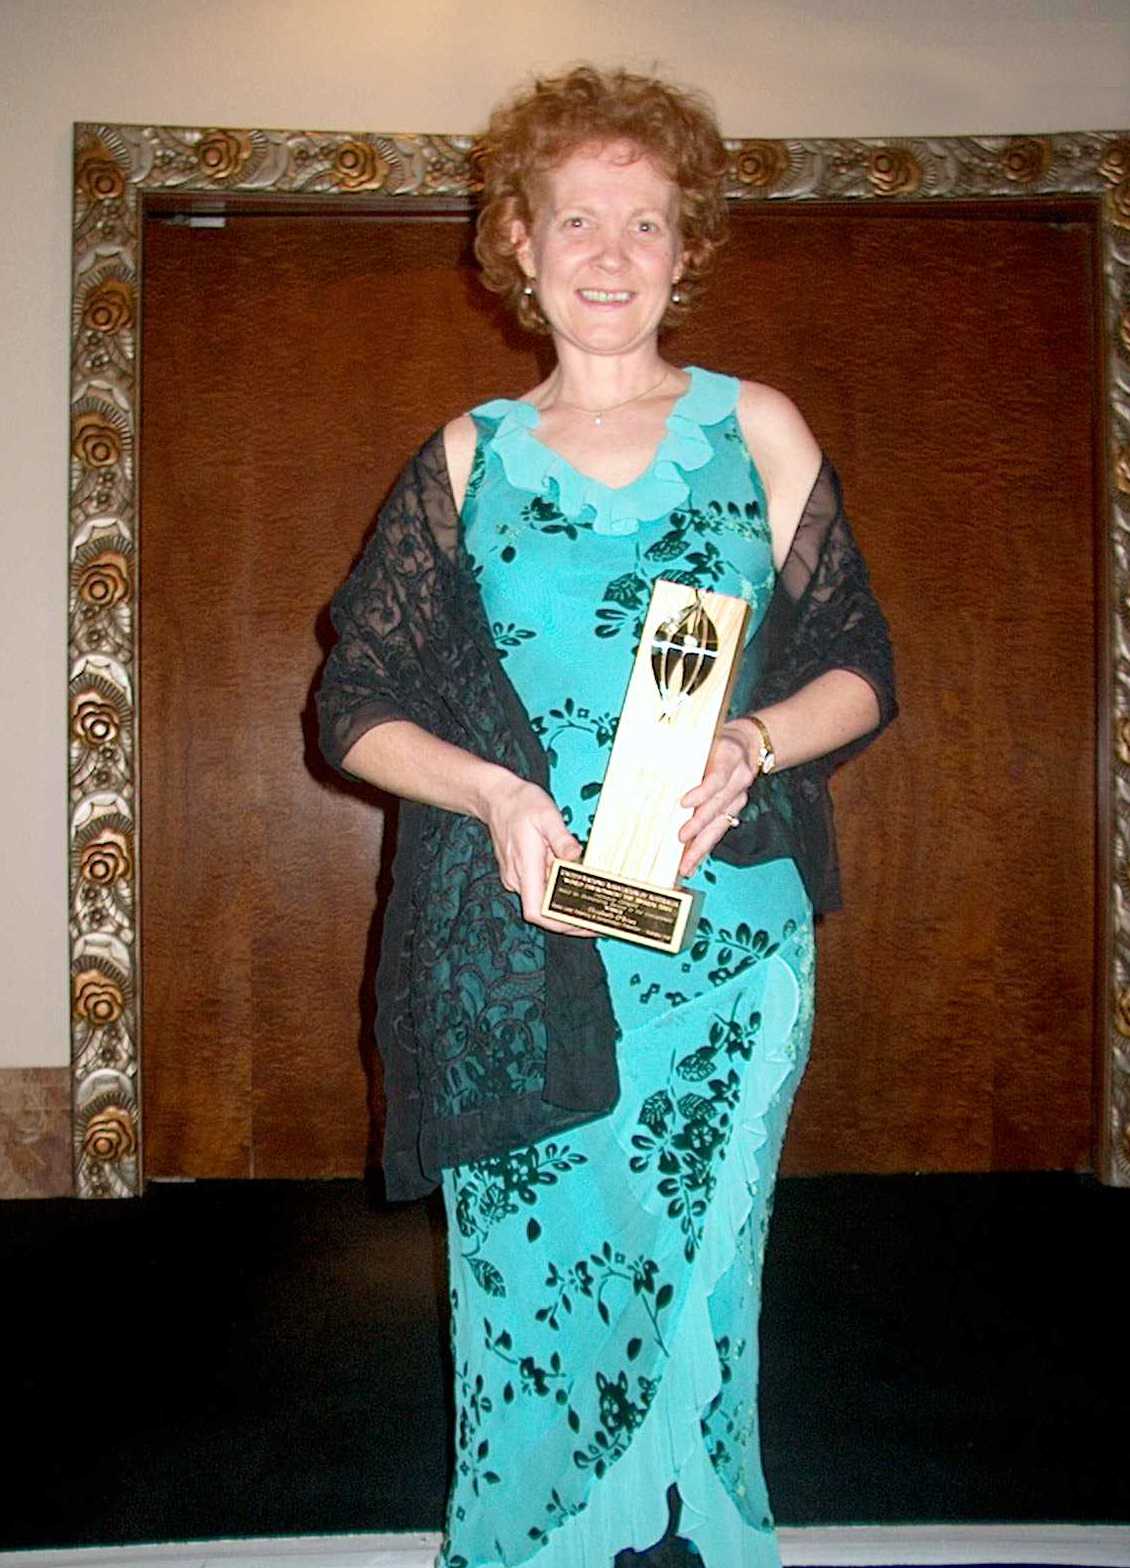 Elizabeth O'Brien & UNAA World Environment Day Award